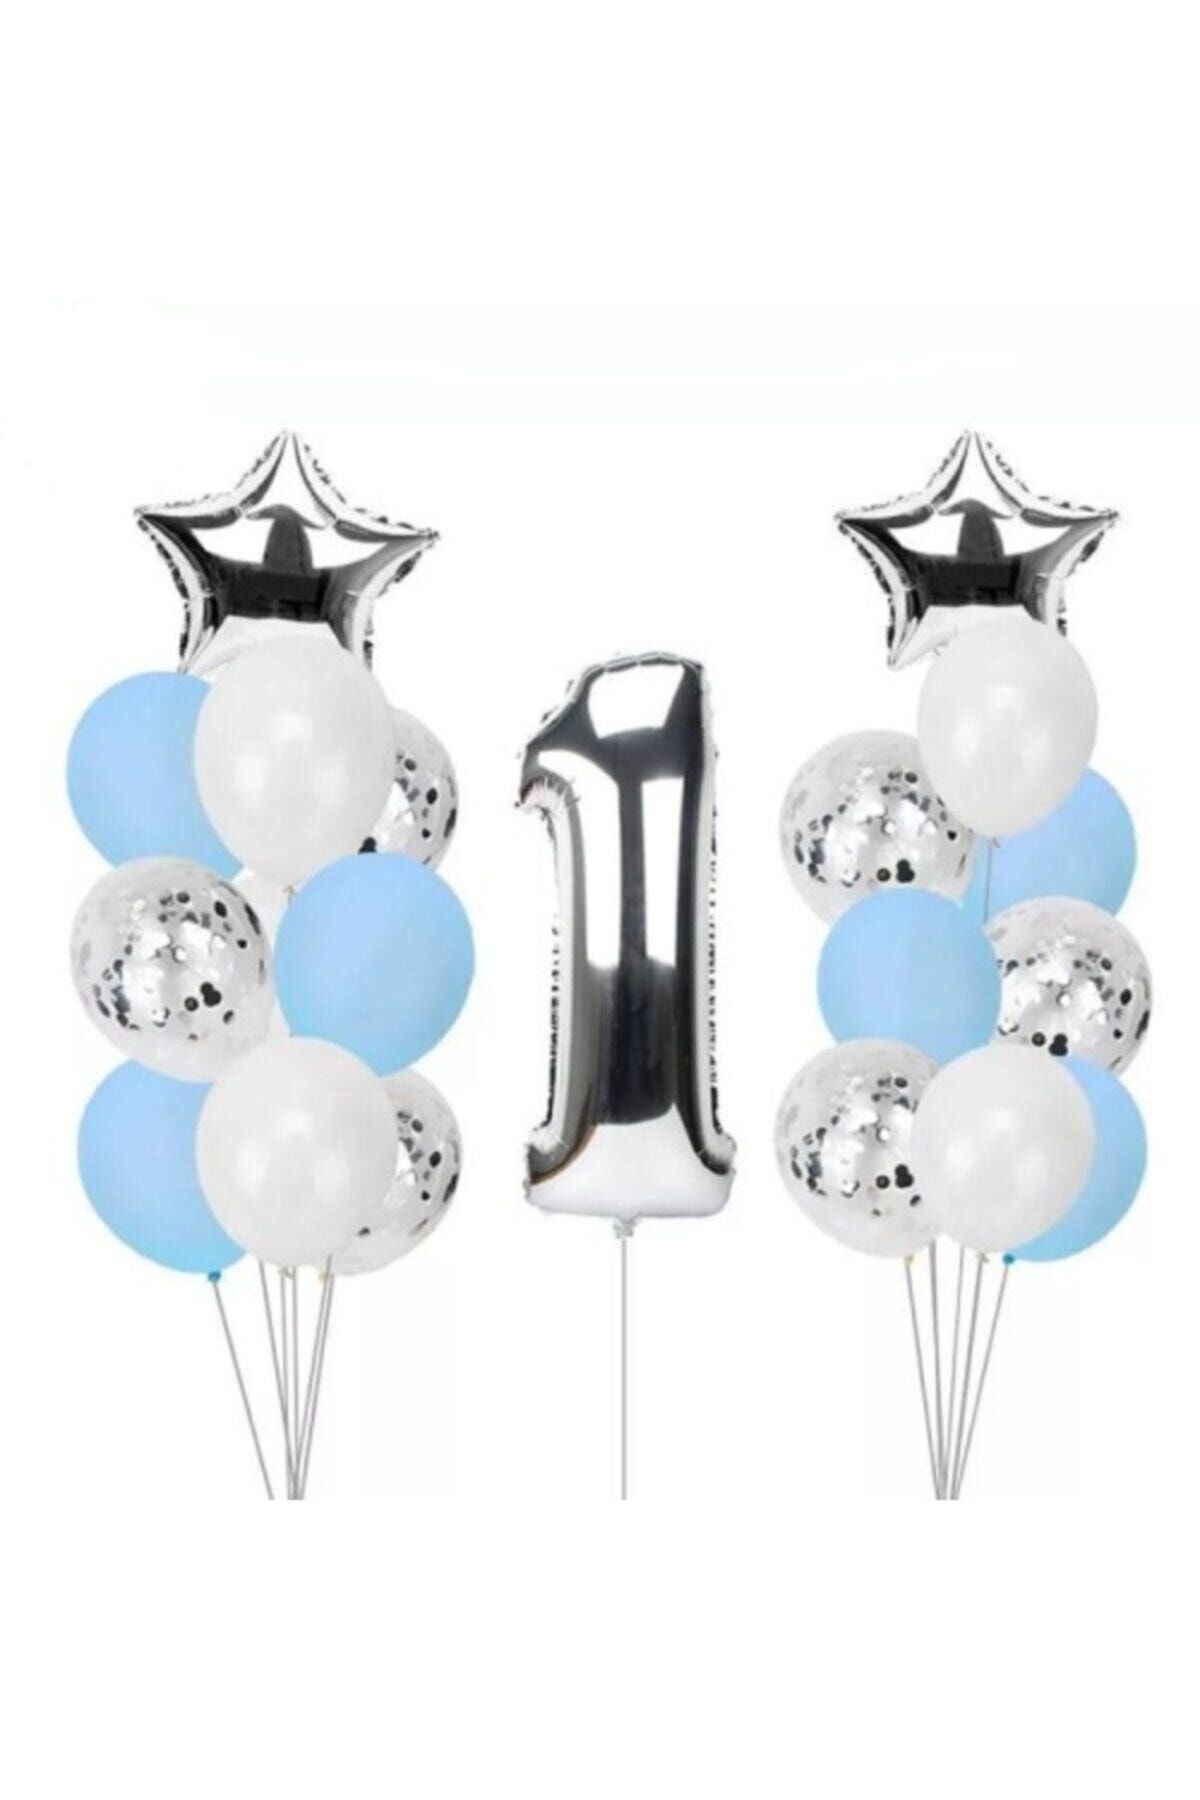 Deniz Party Store 1 Yaş Konfetili Şeffaf Balon Seti Doğum Günü Parti Seti